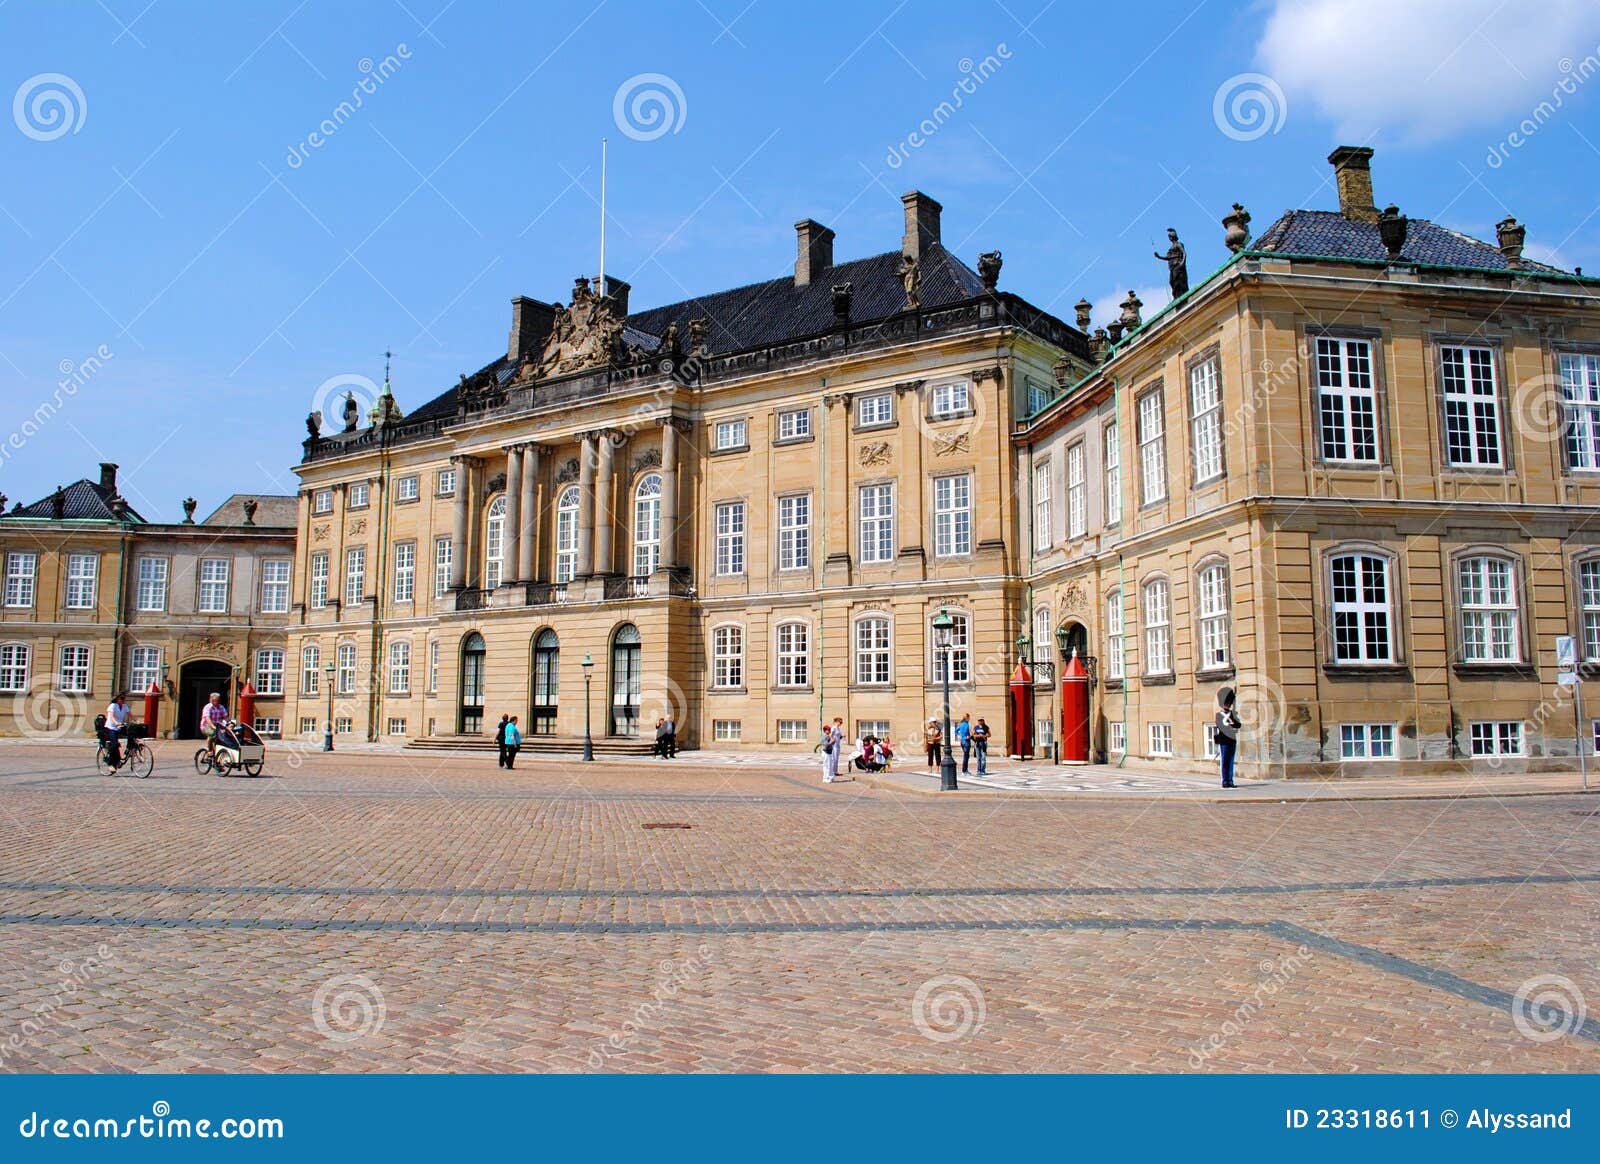 дворец Copenhagen Amalienborg Редакционное Фото - изображение ...